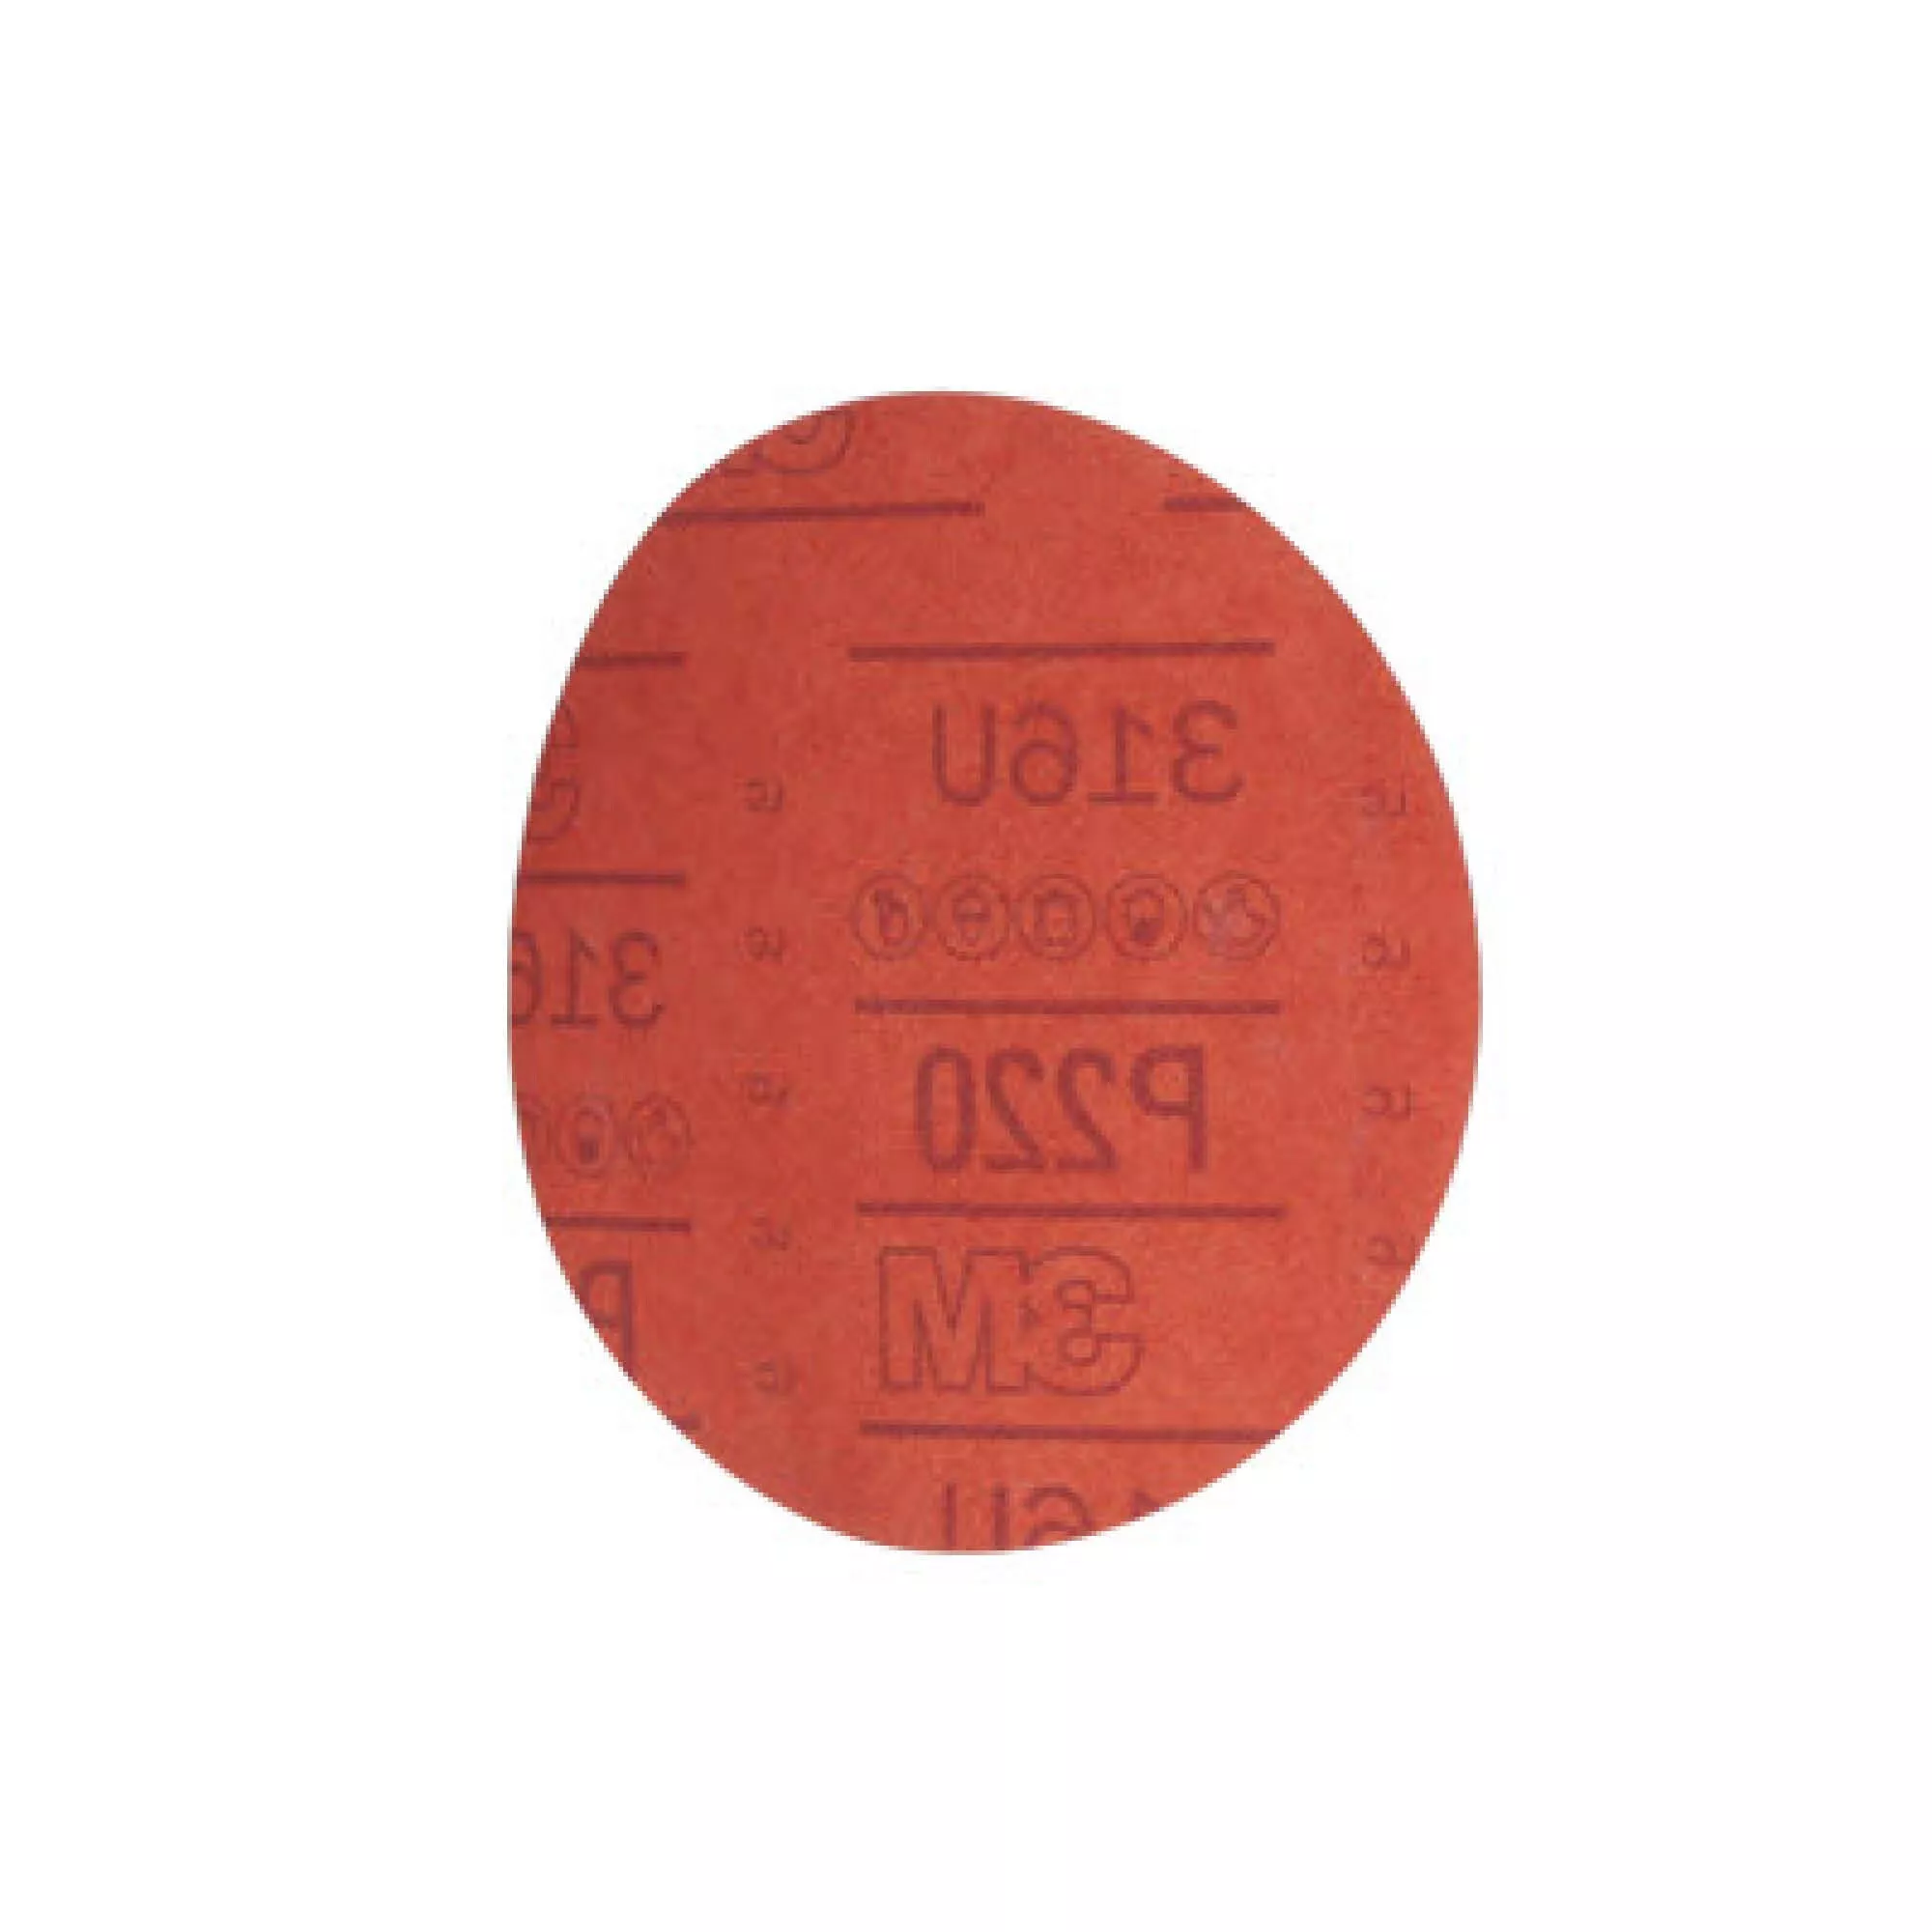 SKU 7000119784 | 3M™ Hookit™ Red Abrasive Disc